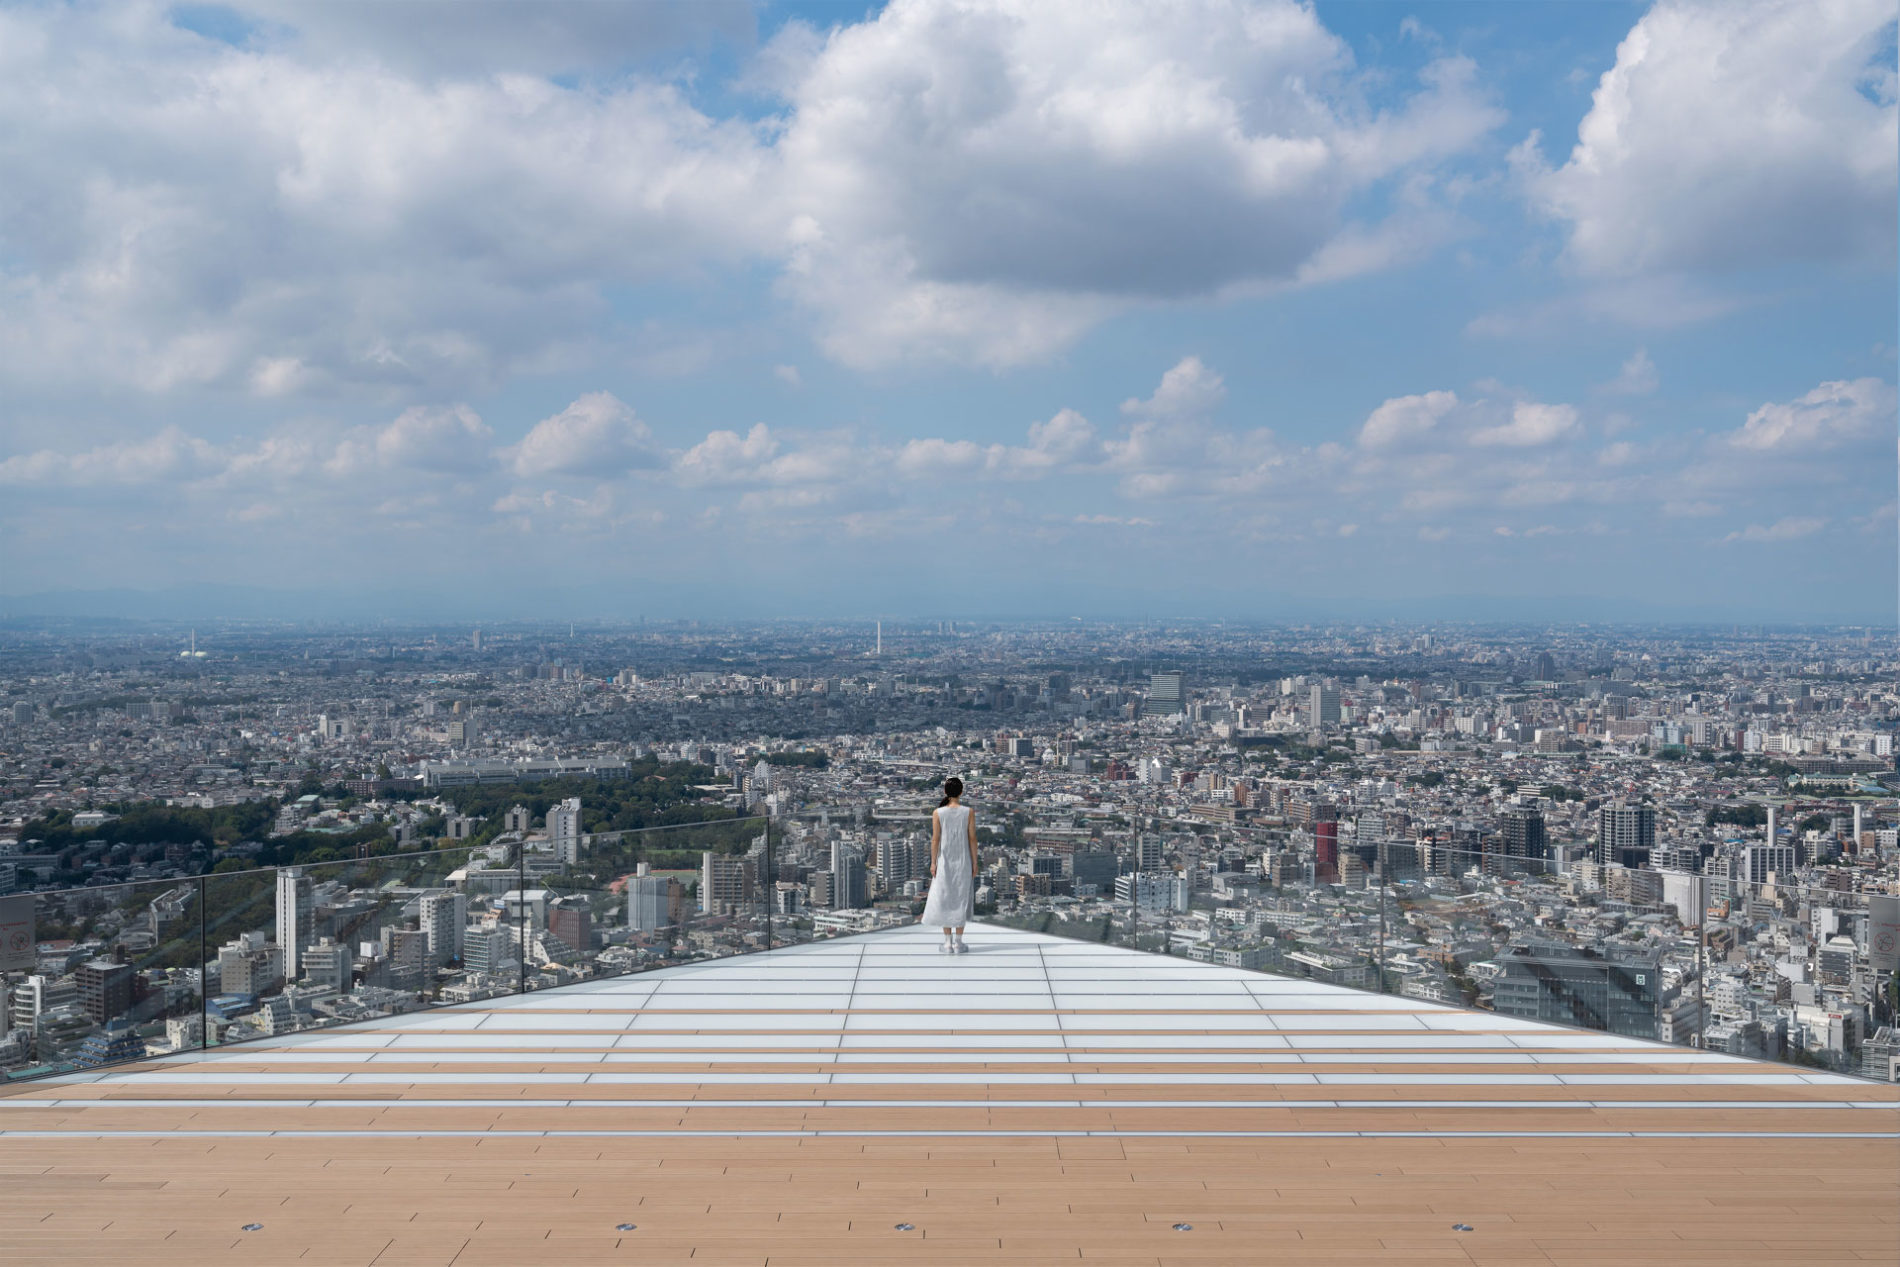 Perfekt für Instagram. Die Aussichtsplattform "Shibuya Sky" des "Shibuya Square Scramble" Hochhausesbietet einen einmalige 360-Grad-Aussicht auf ganz Tōkyō. (Foto: Shibuya Scramble Square)